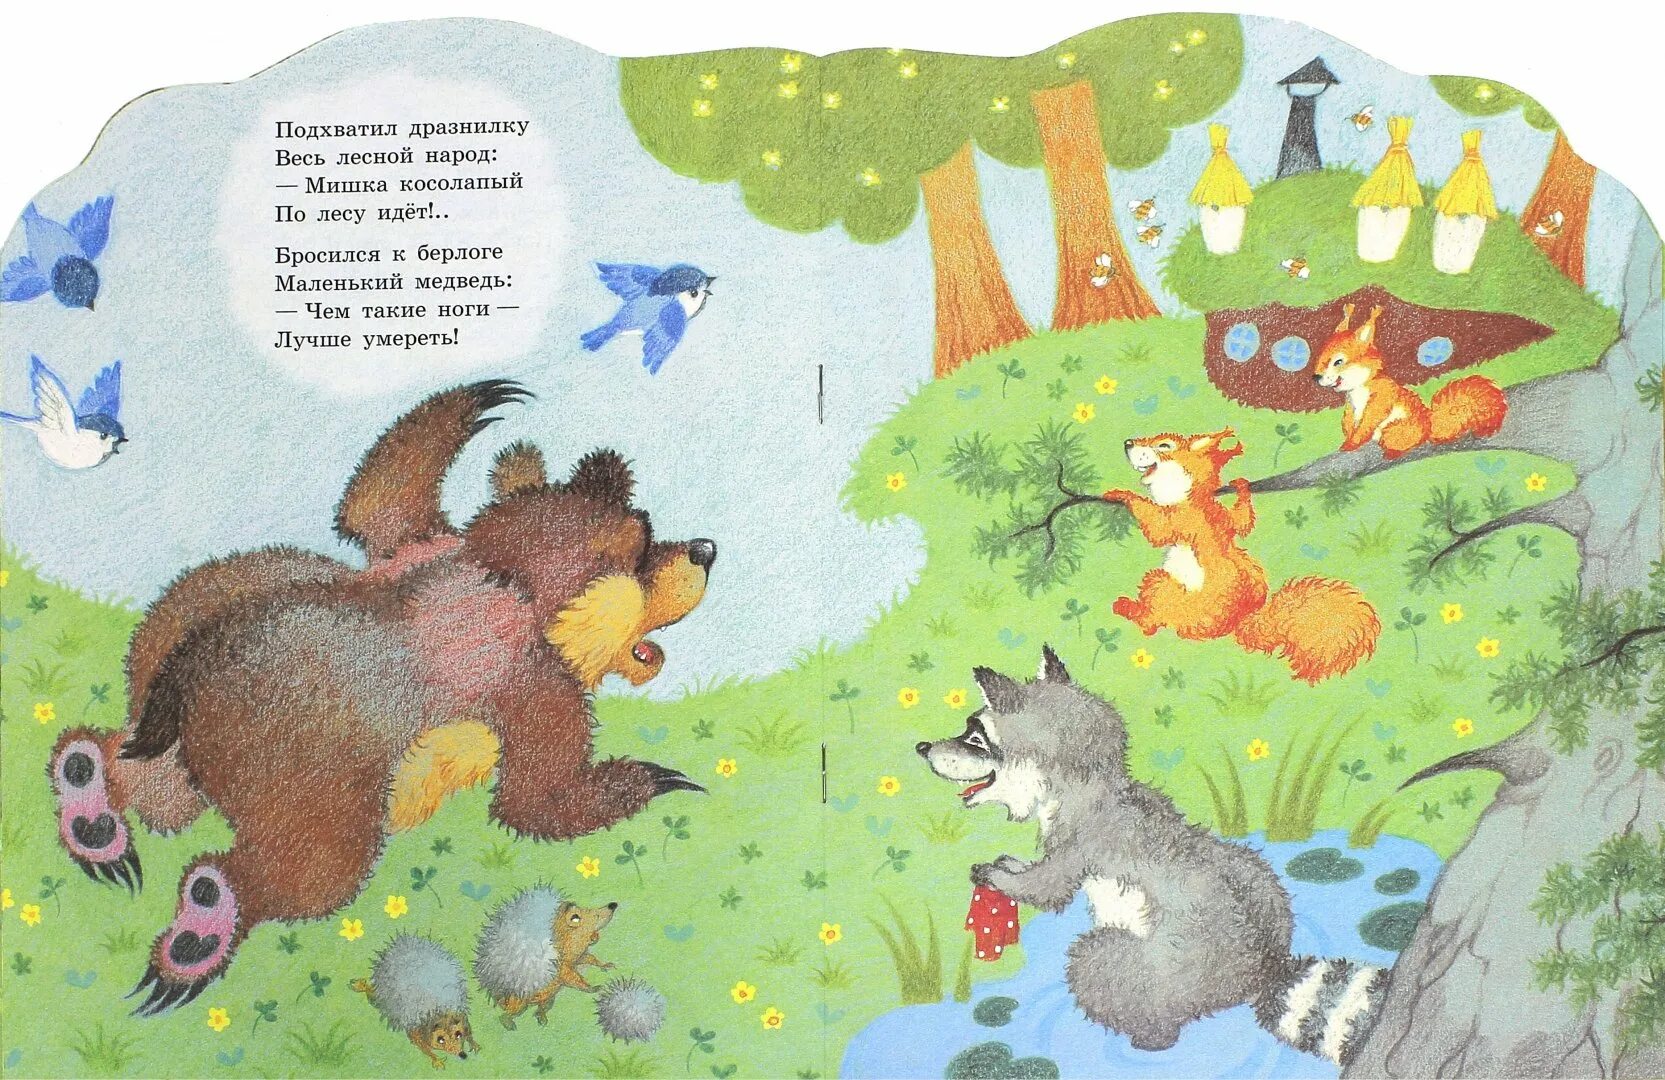 Мишка косолапый песня детская по лесу идет. Усачев мишка косолапый. Иллюстрации к стихам Усачева. Стихотворение мишка косолапый. Сказка мишка косолапый.